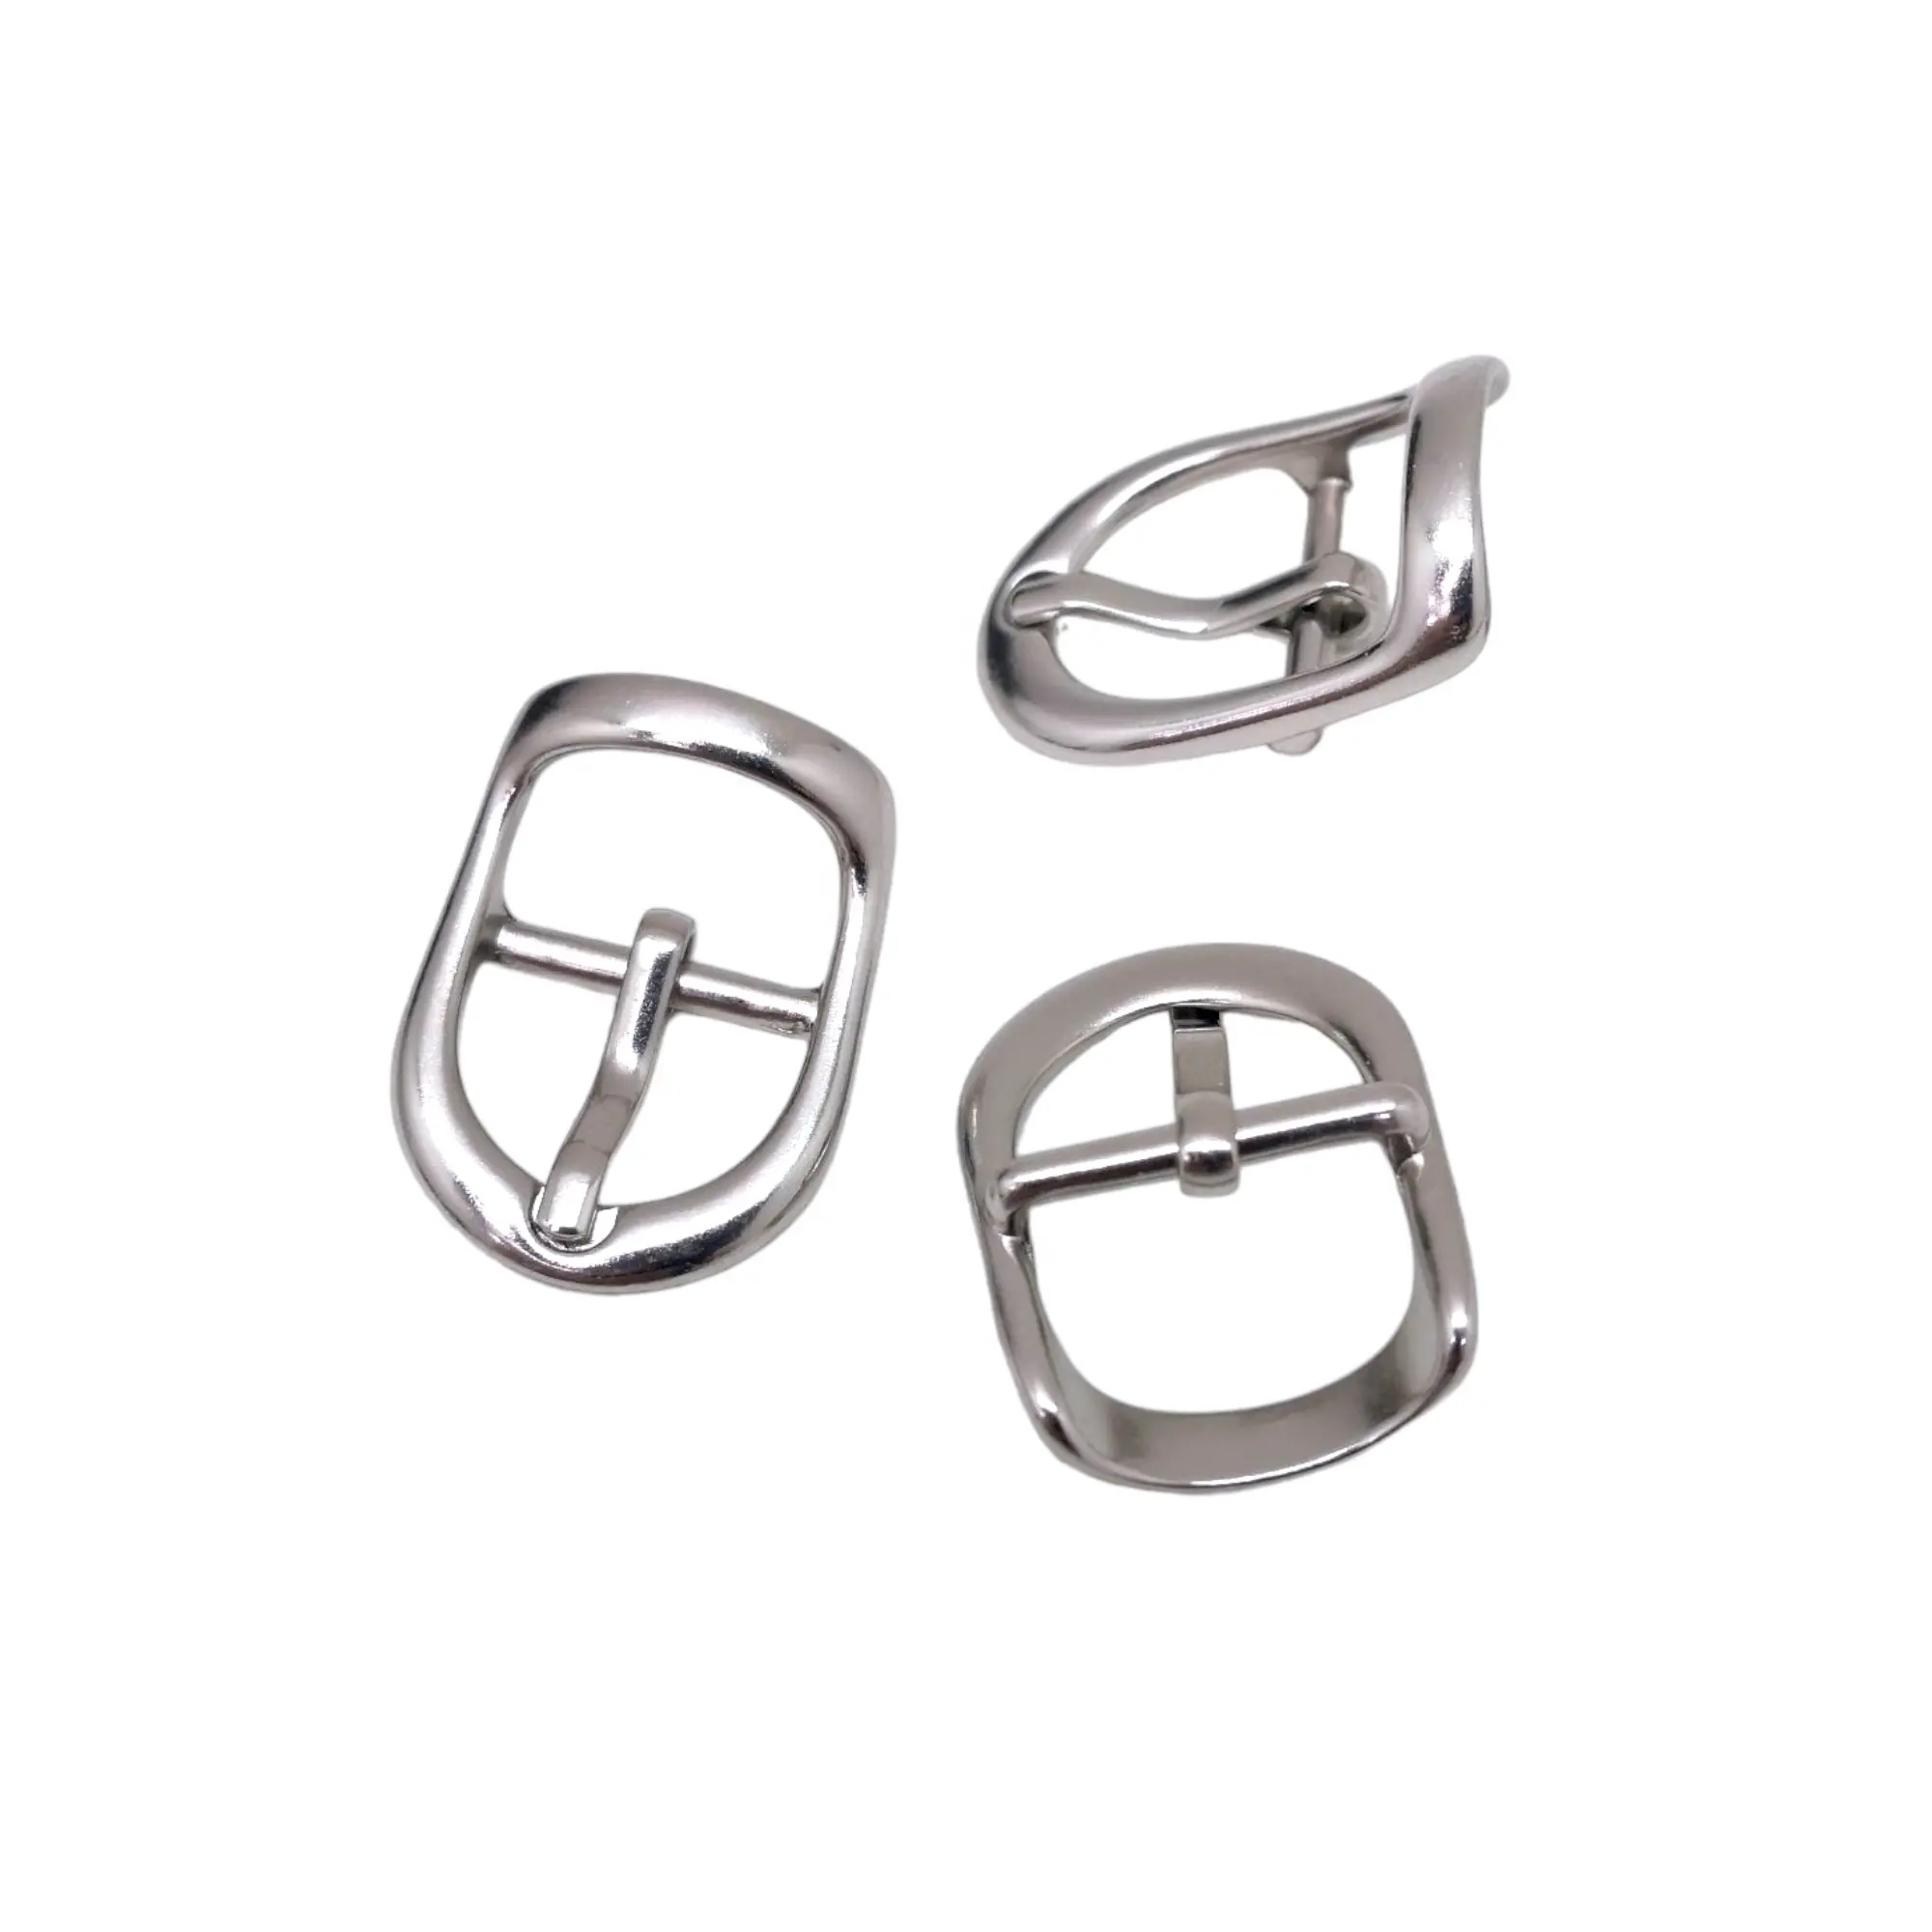 MING KEE METAL Aleación de Zinc 15mm pequeño borde curvo Pin hebilla anillo para bolso accesorios bolsa uso medio Pin hebilla